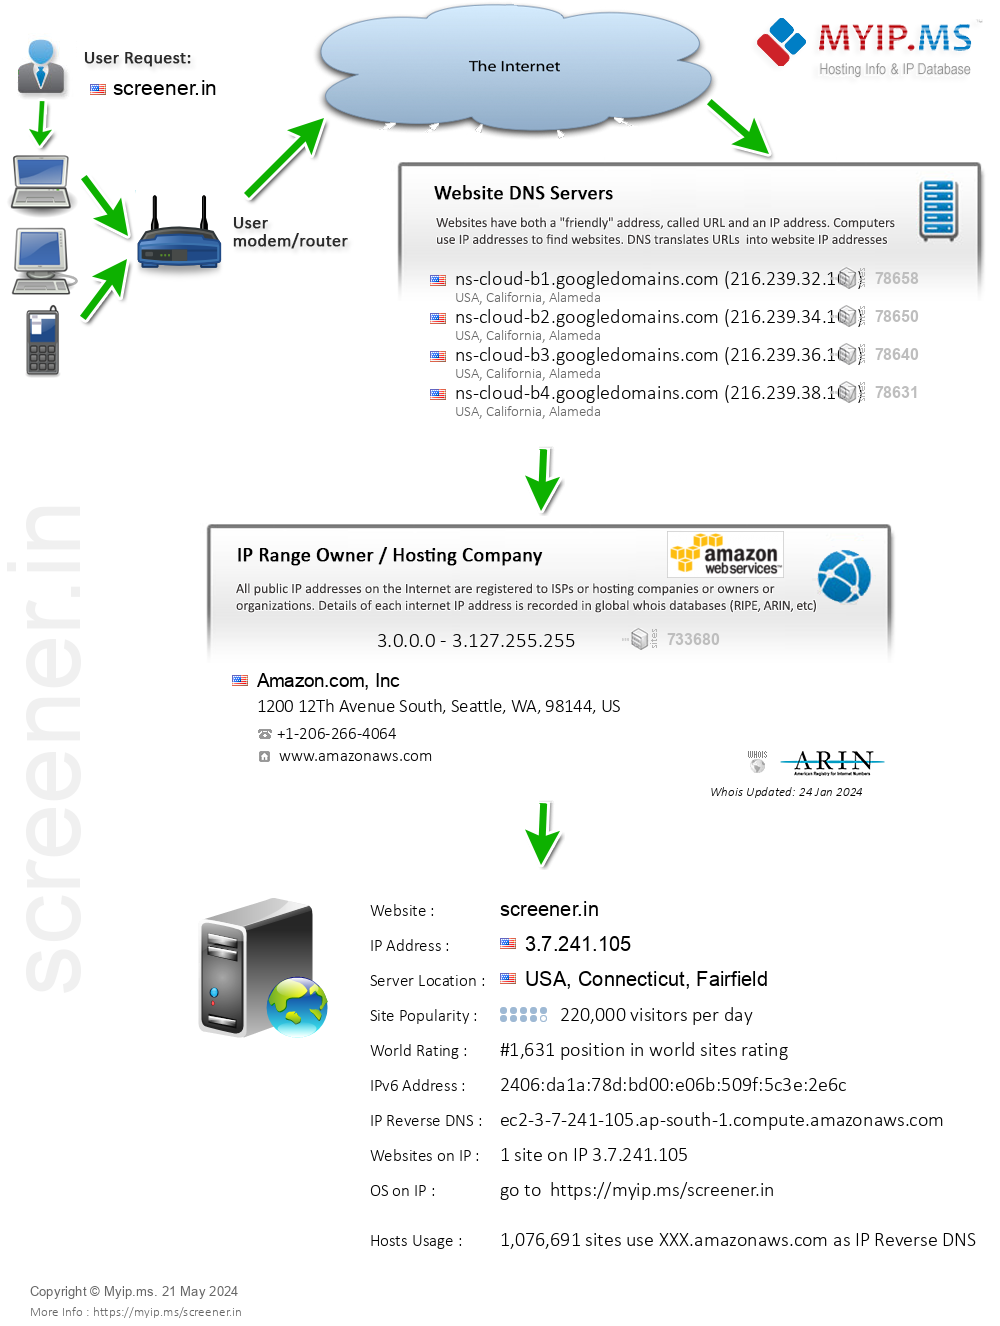 Screener.in - Website Hosting Visual IP Diagram